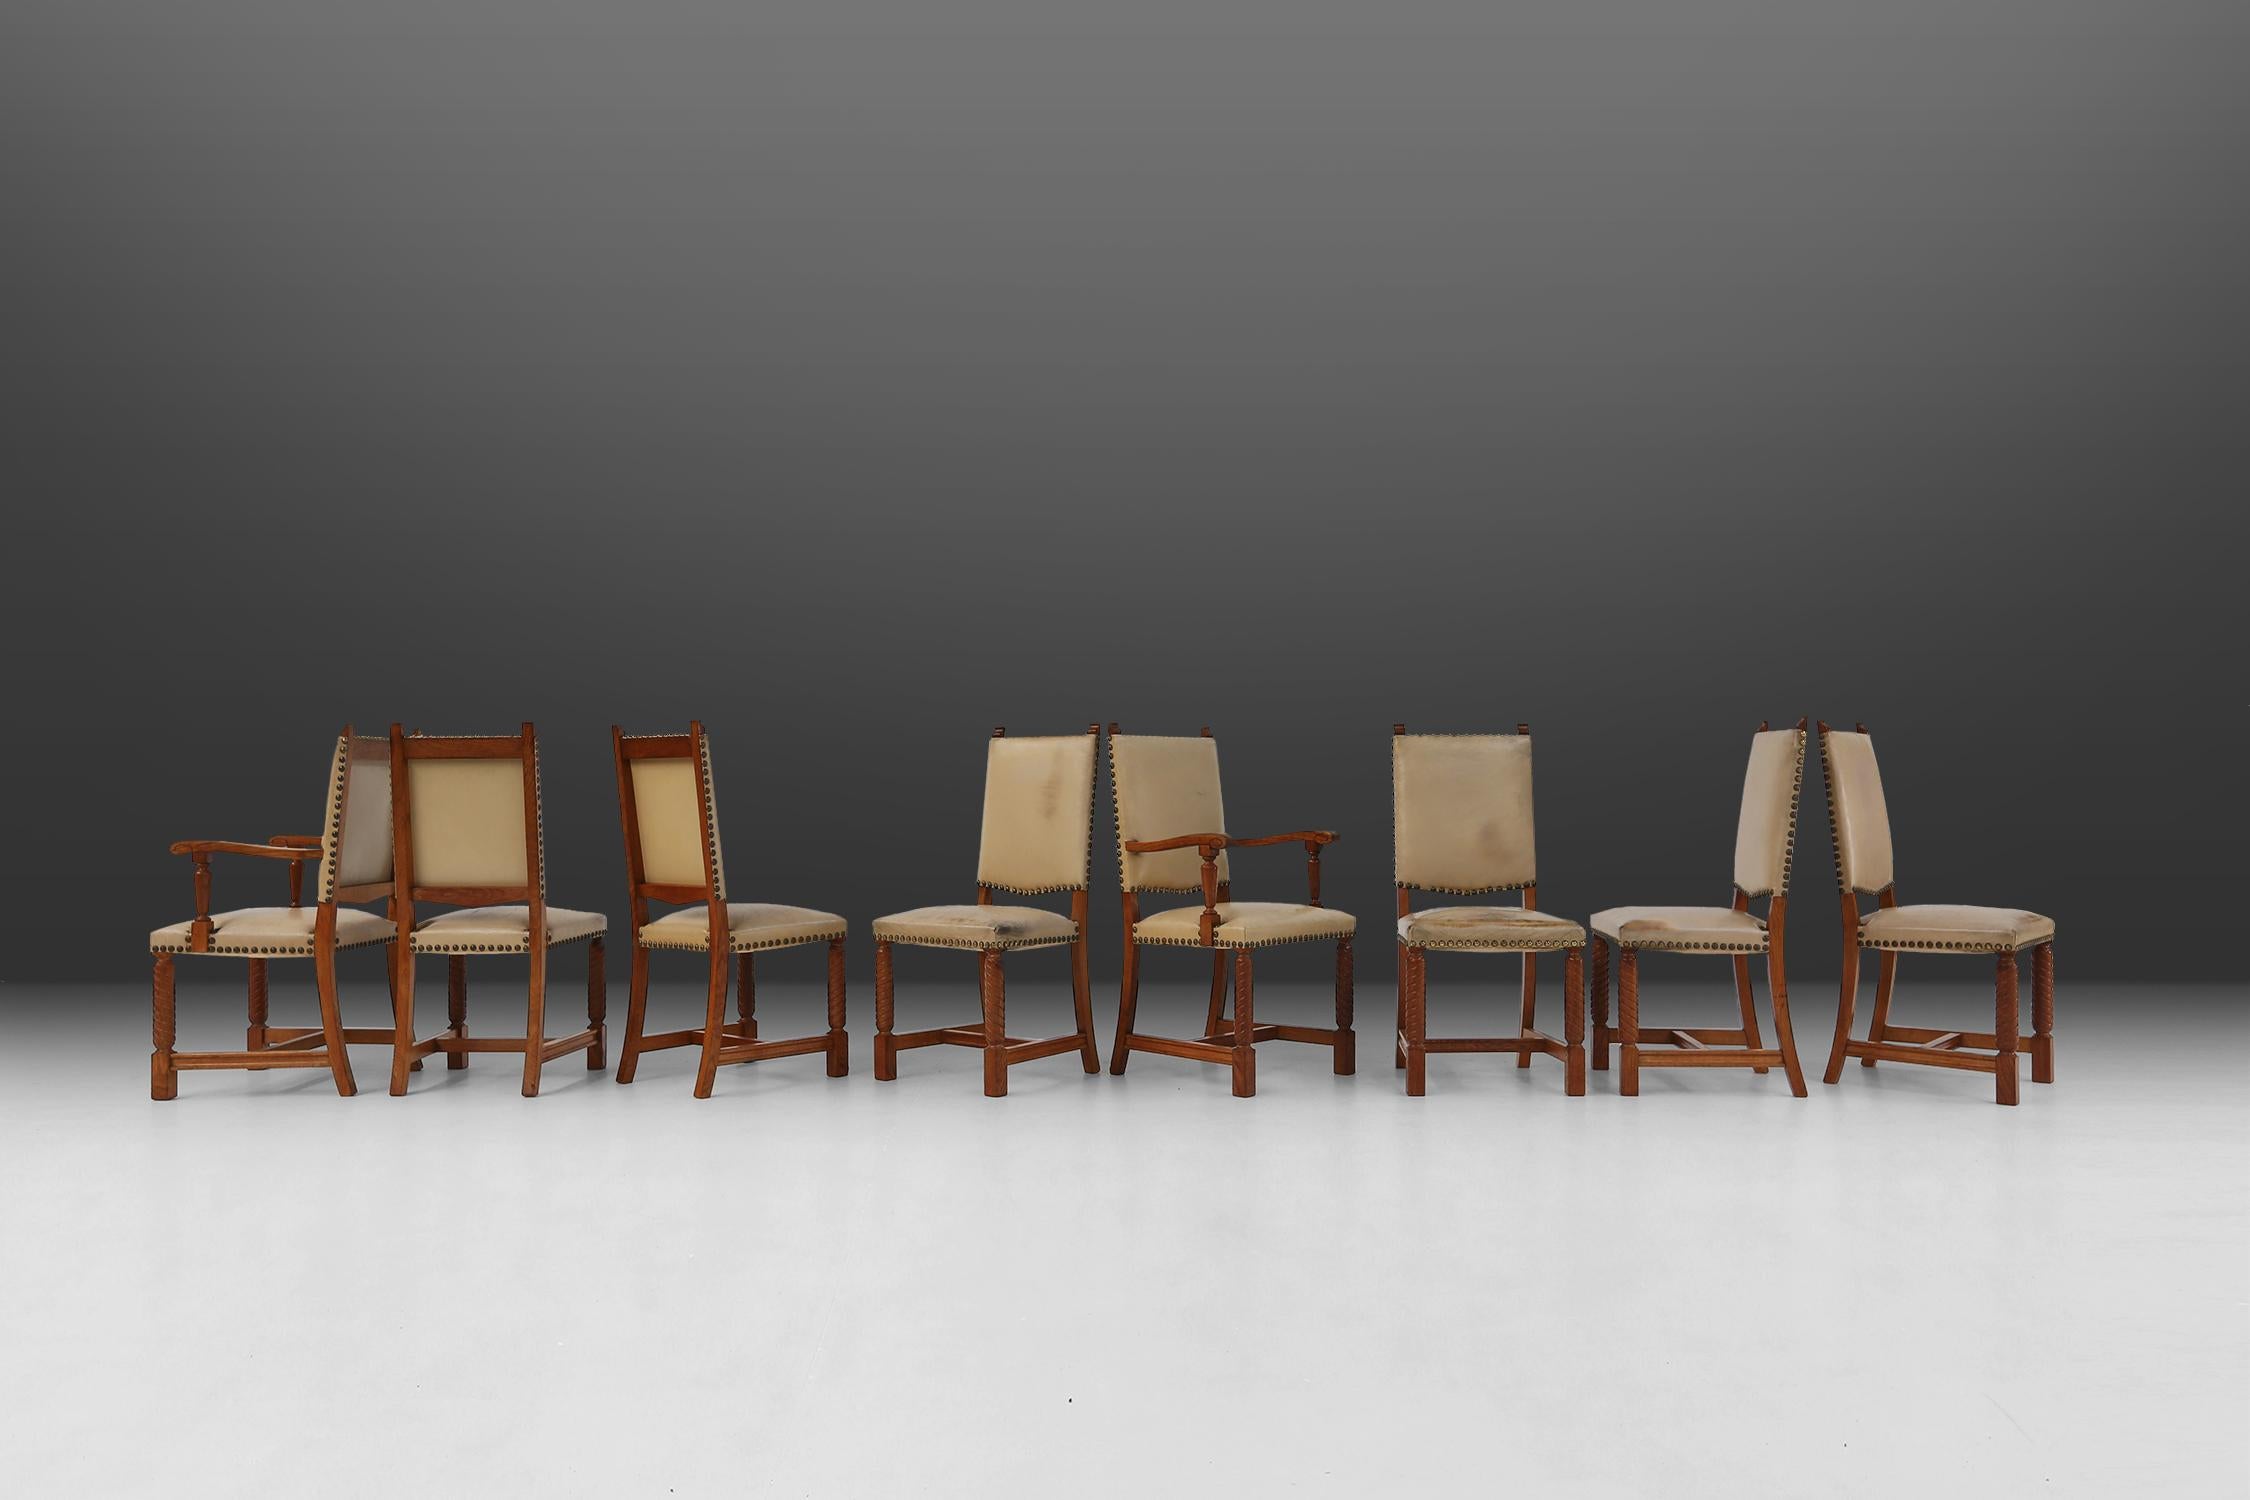 Chaises de salle à manger Art déco belges en chêne massif et cuir.
Chaises de salle à manger au design magnifique, représentatives de la période Art déco des années 1940. Les chaises robustes ont des pieds tournés et une assise et un dossier en